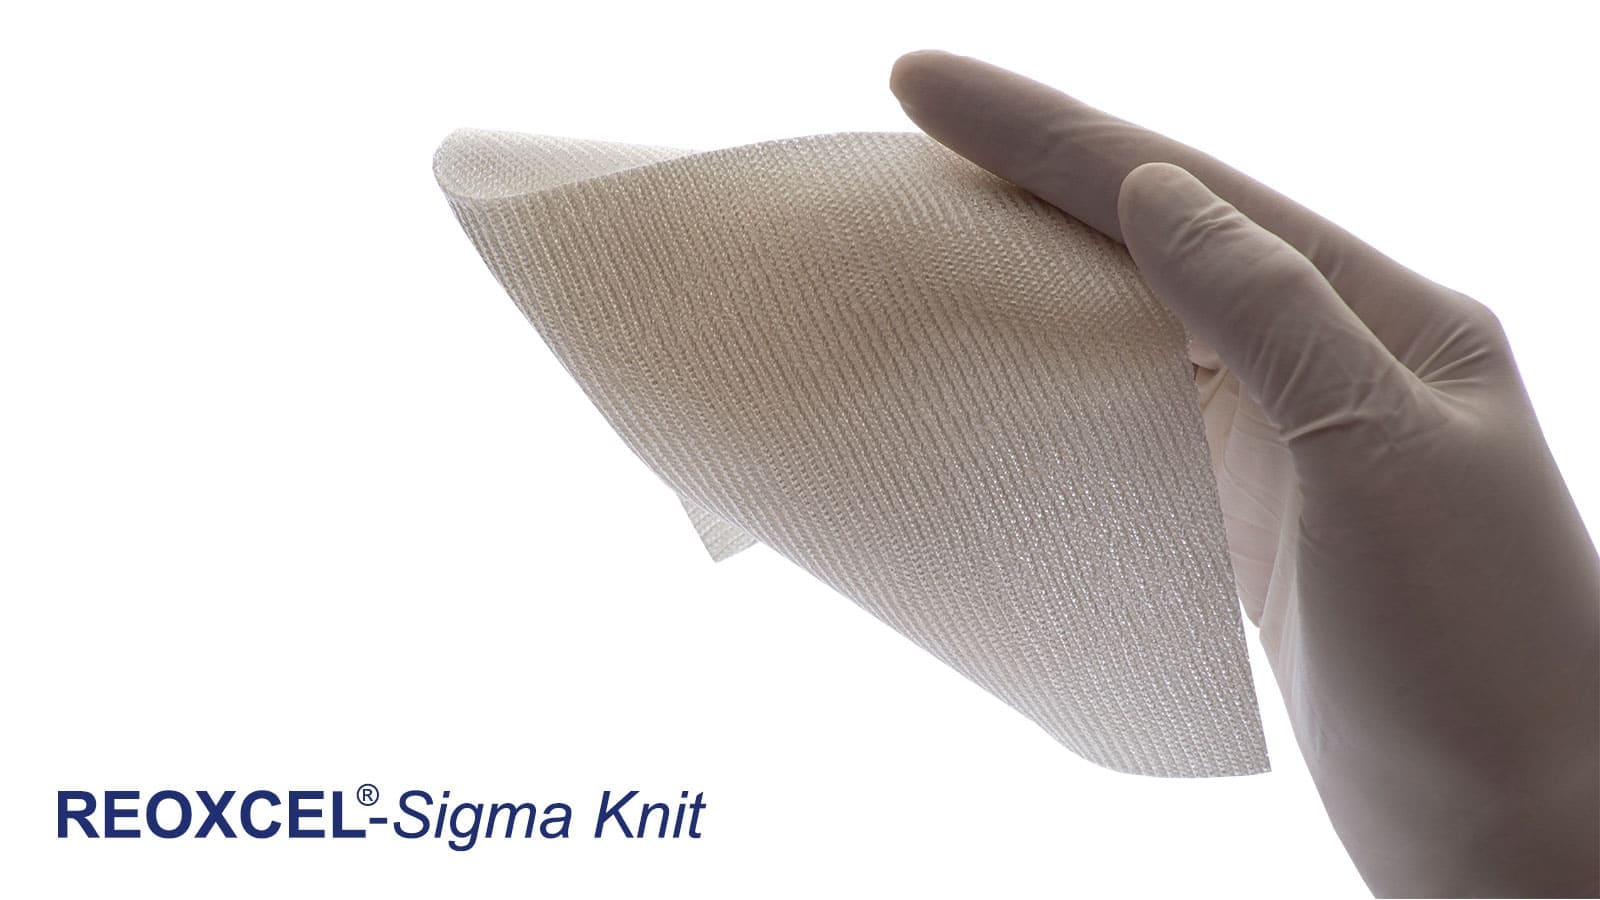 Reoxcel Sigma Knit Hämostat mit glatter Textur und dickem Gestrick kann auf blutende Flächen gelegt, gedrückt oder genäht werden.